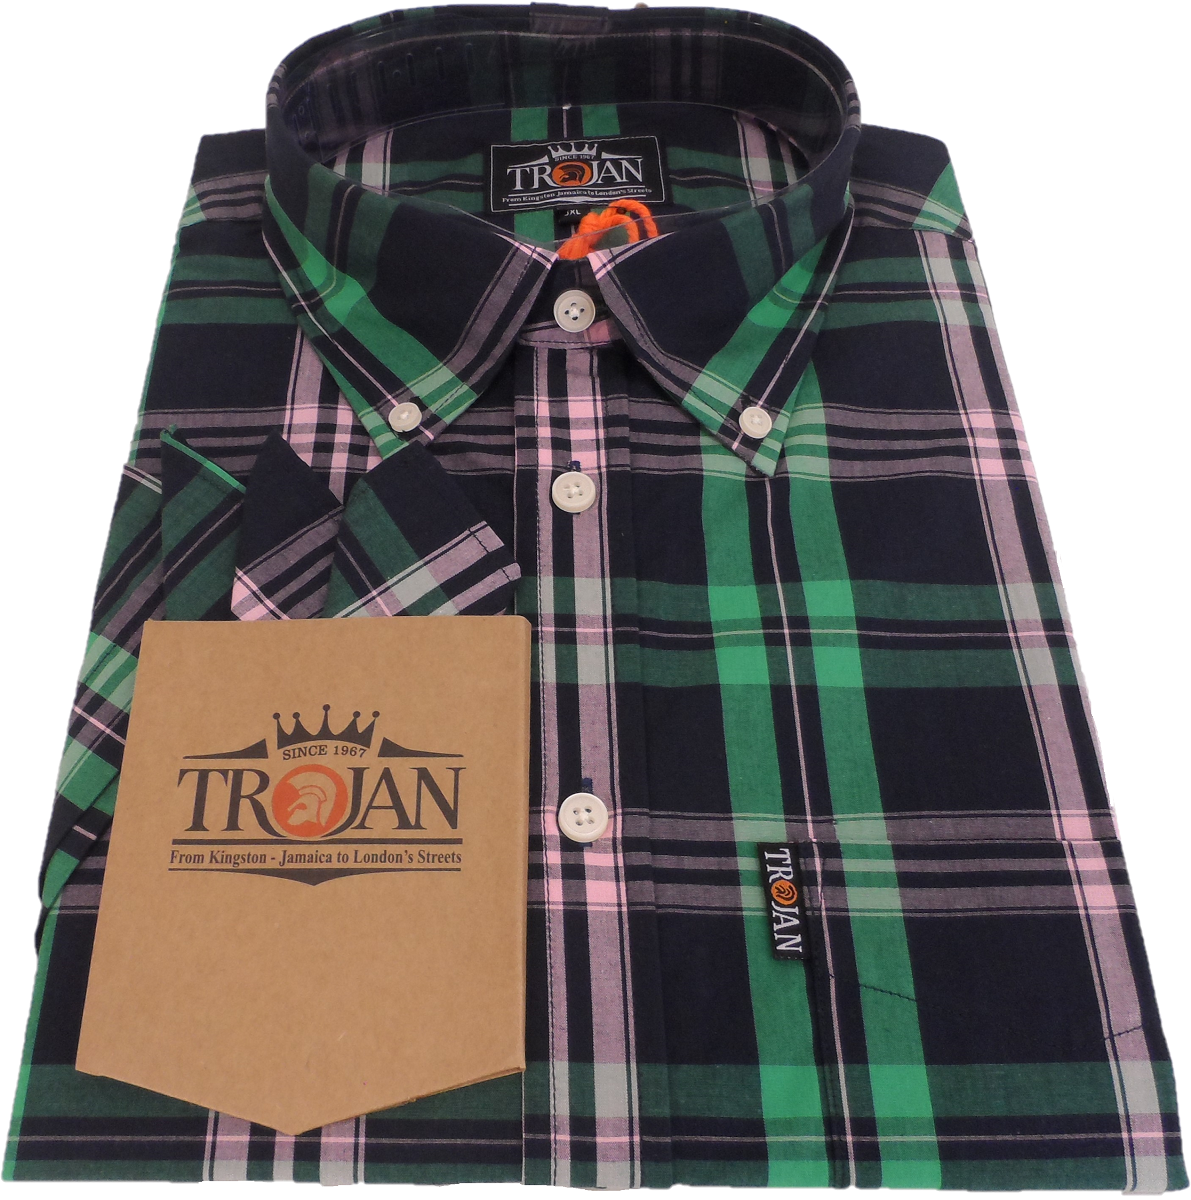 Trojan Mens Navy Check 100% Cotton Short Sleeved Shirts and Pocket Square